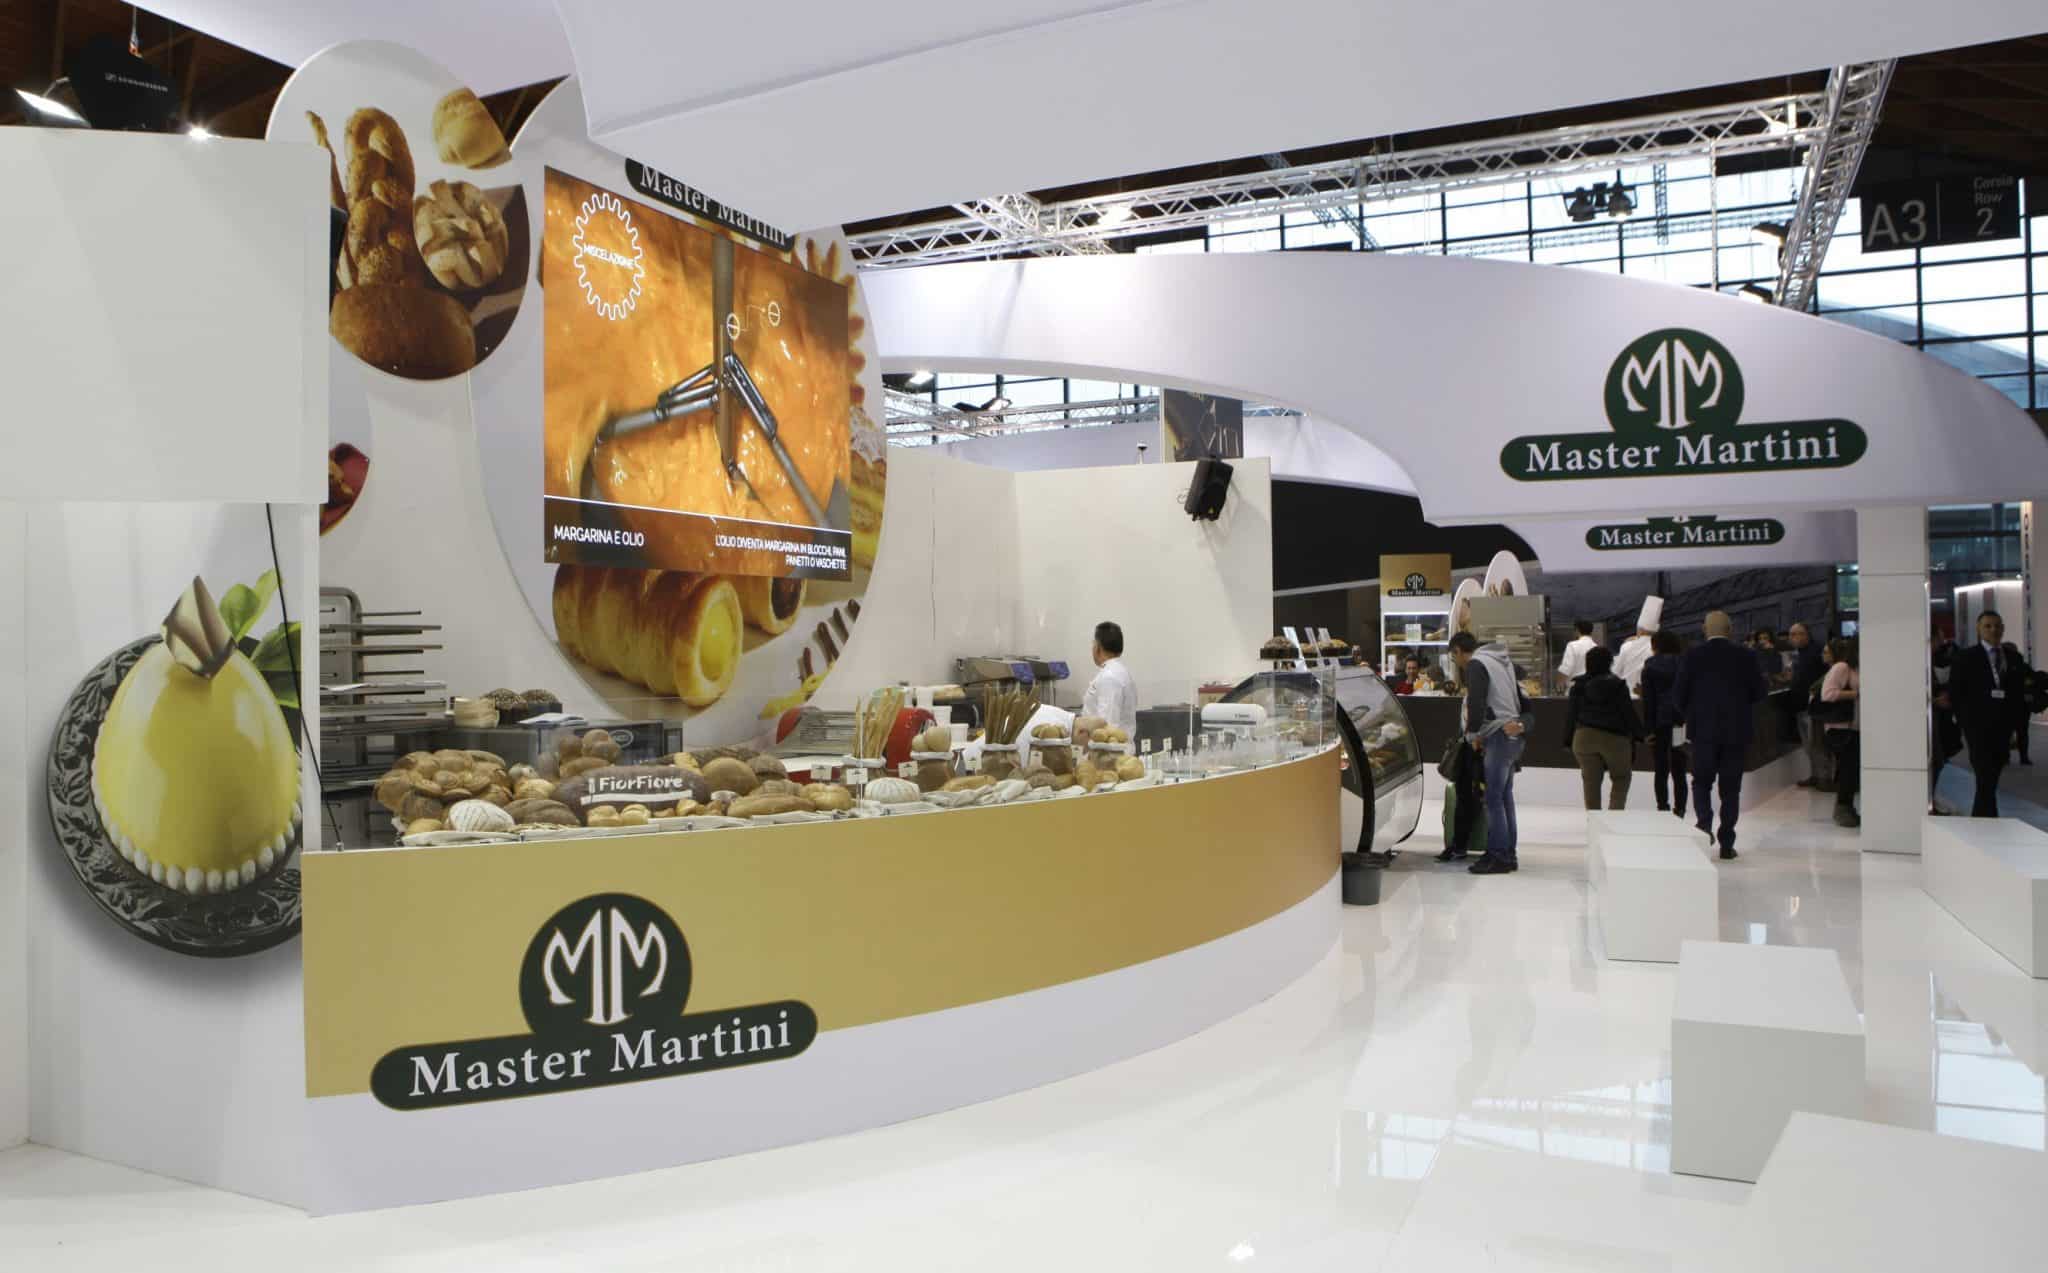 המותג האיטלקי מאסטר מרטיני (MASTER MARTINI) מתמחה בתחום האפייה הקונדיטוריה והגלידה לשוק המקצועי והמותג זוכה להערכה בינלאומית מקונדיטורים בעולם